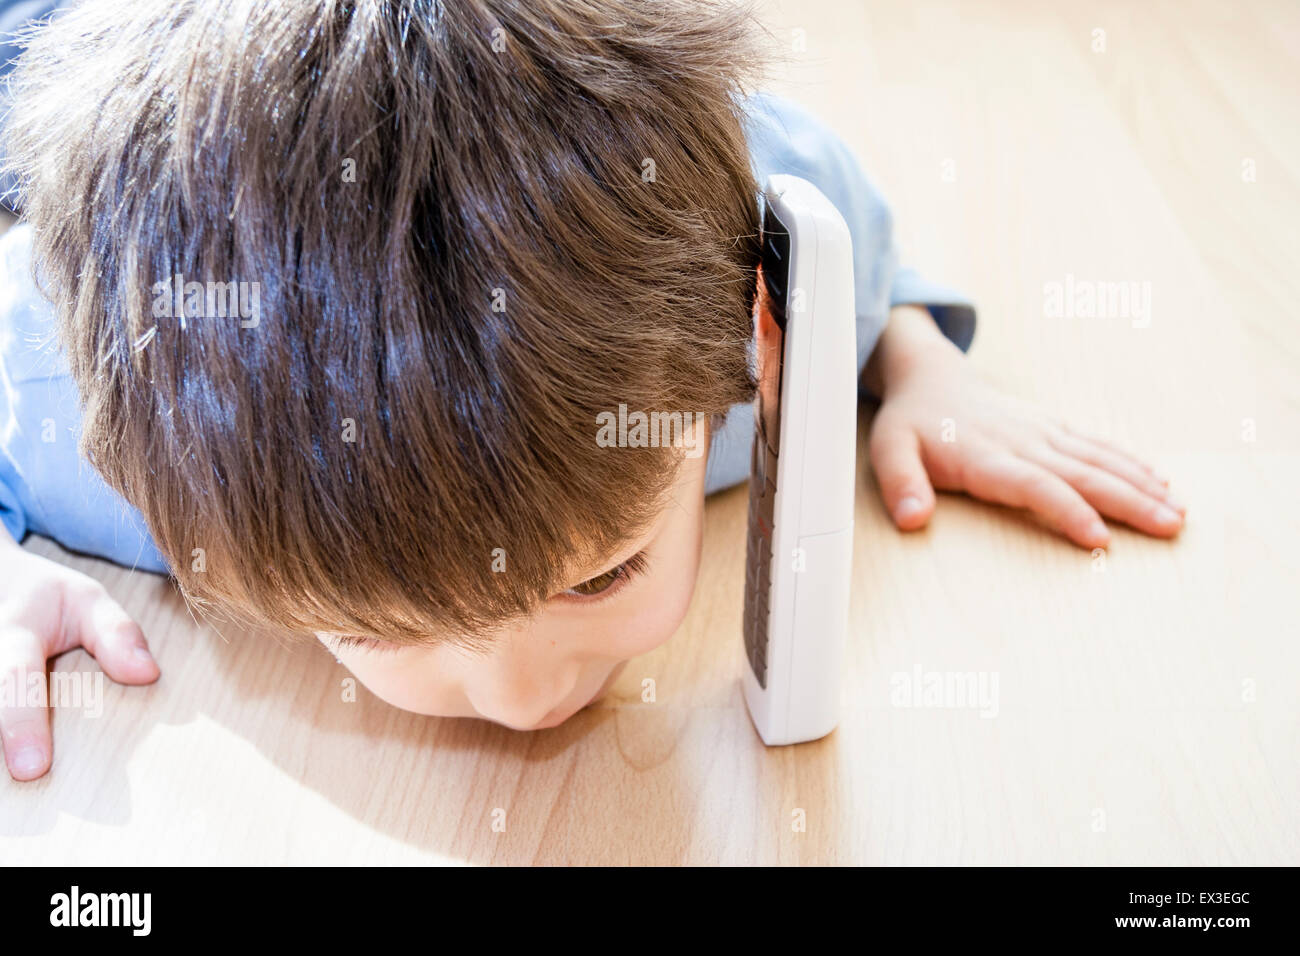 Nahaufnahme von einem kaukasischen Kind, Junge, 6-7 Jahre alt, Verlegung im Innenbereich auf Holzboden mit seinem Ohr gegen eine frei stehende Telefon und versuchte, zu hören. Stockfoto